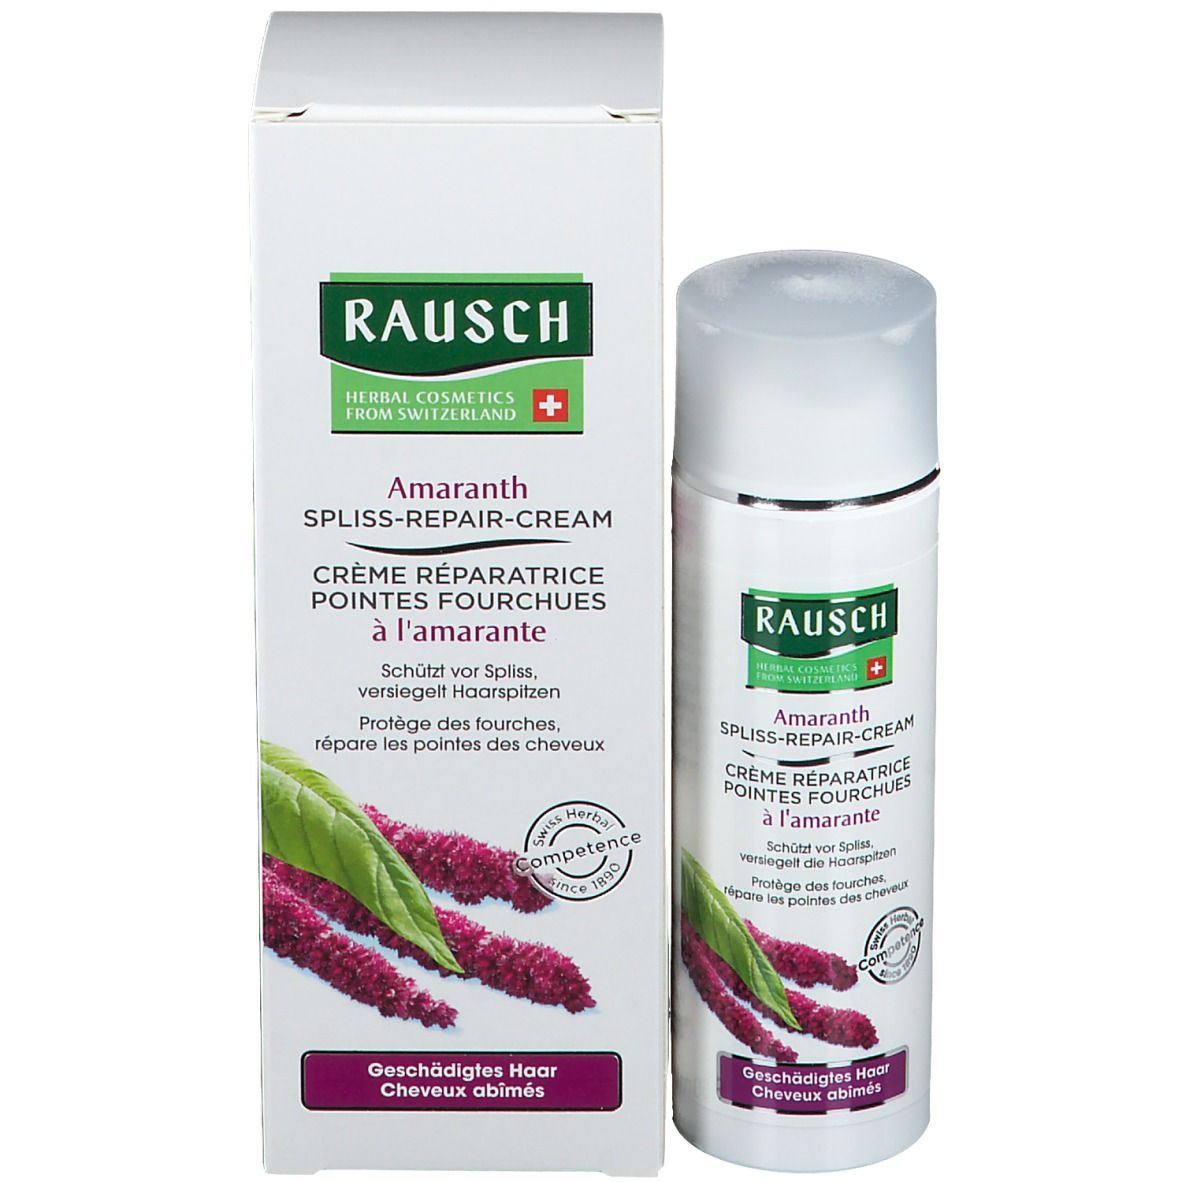 RAUSCH Amaranth Spliss-Repair-Cream